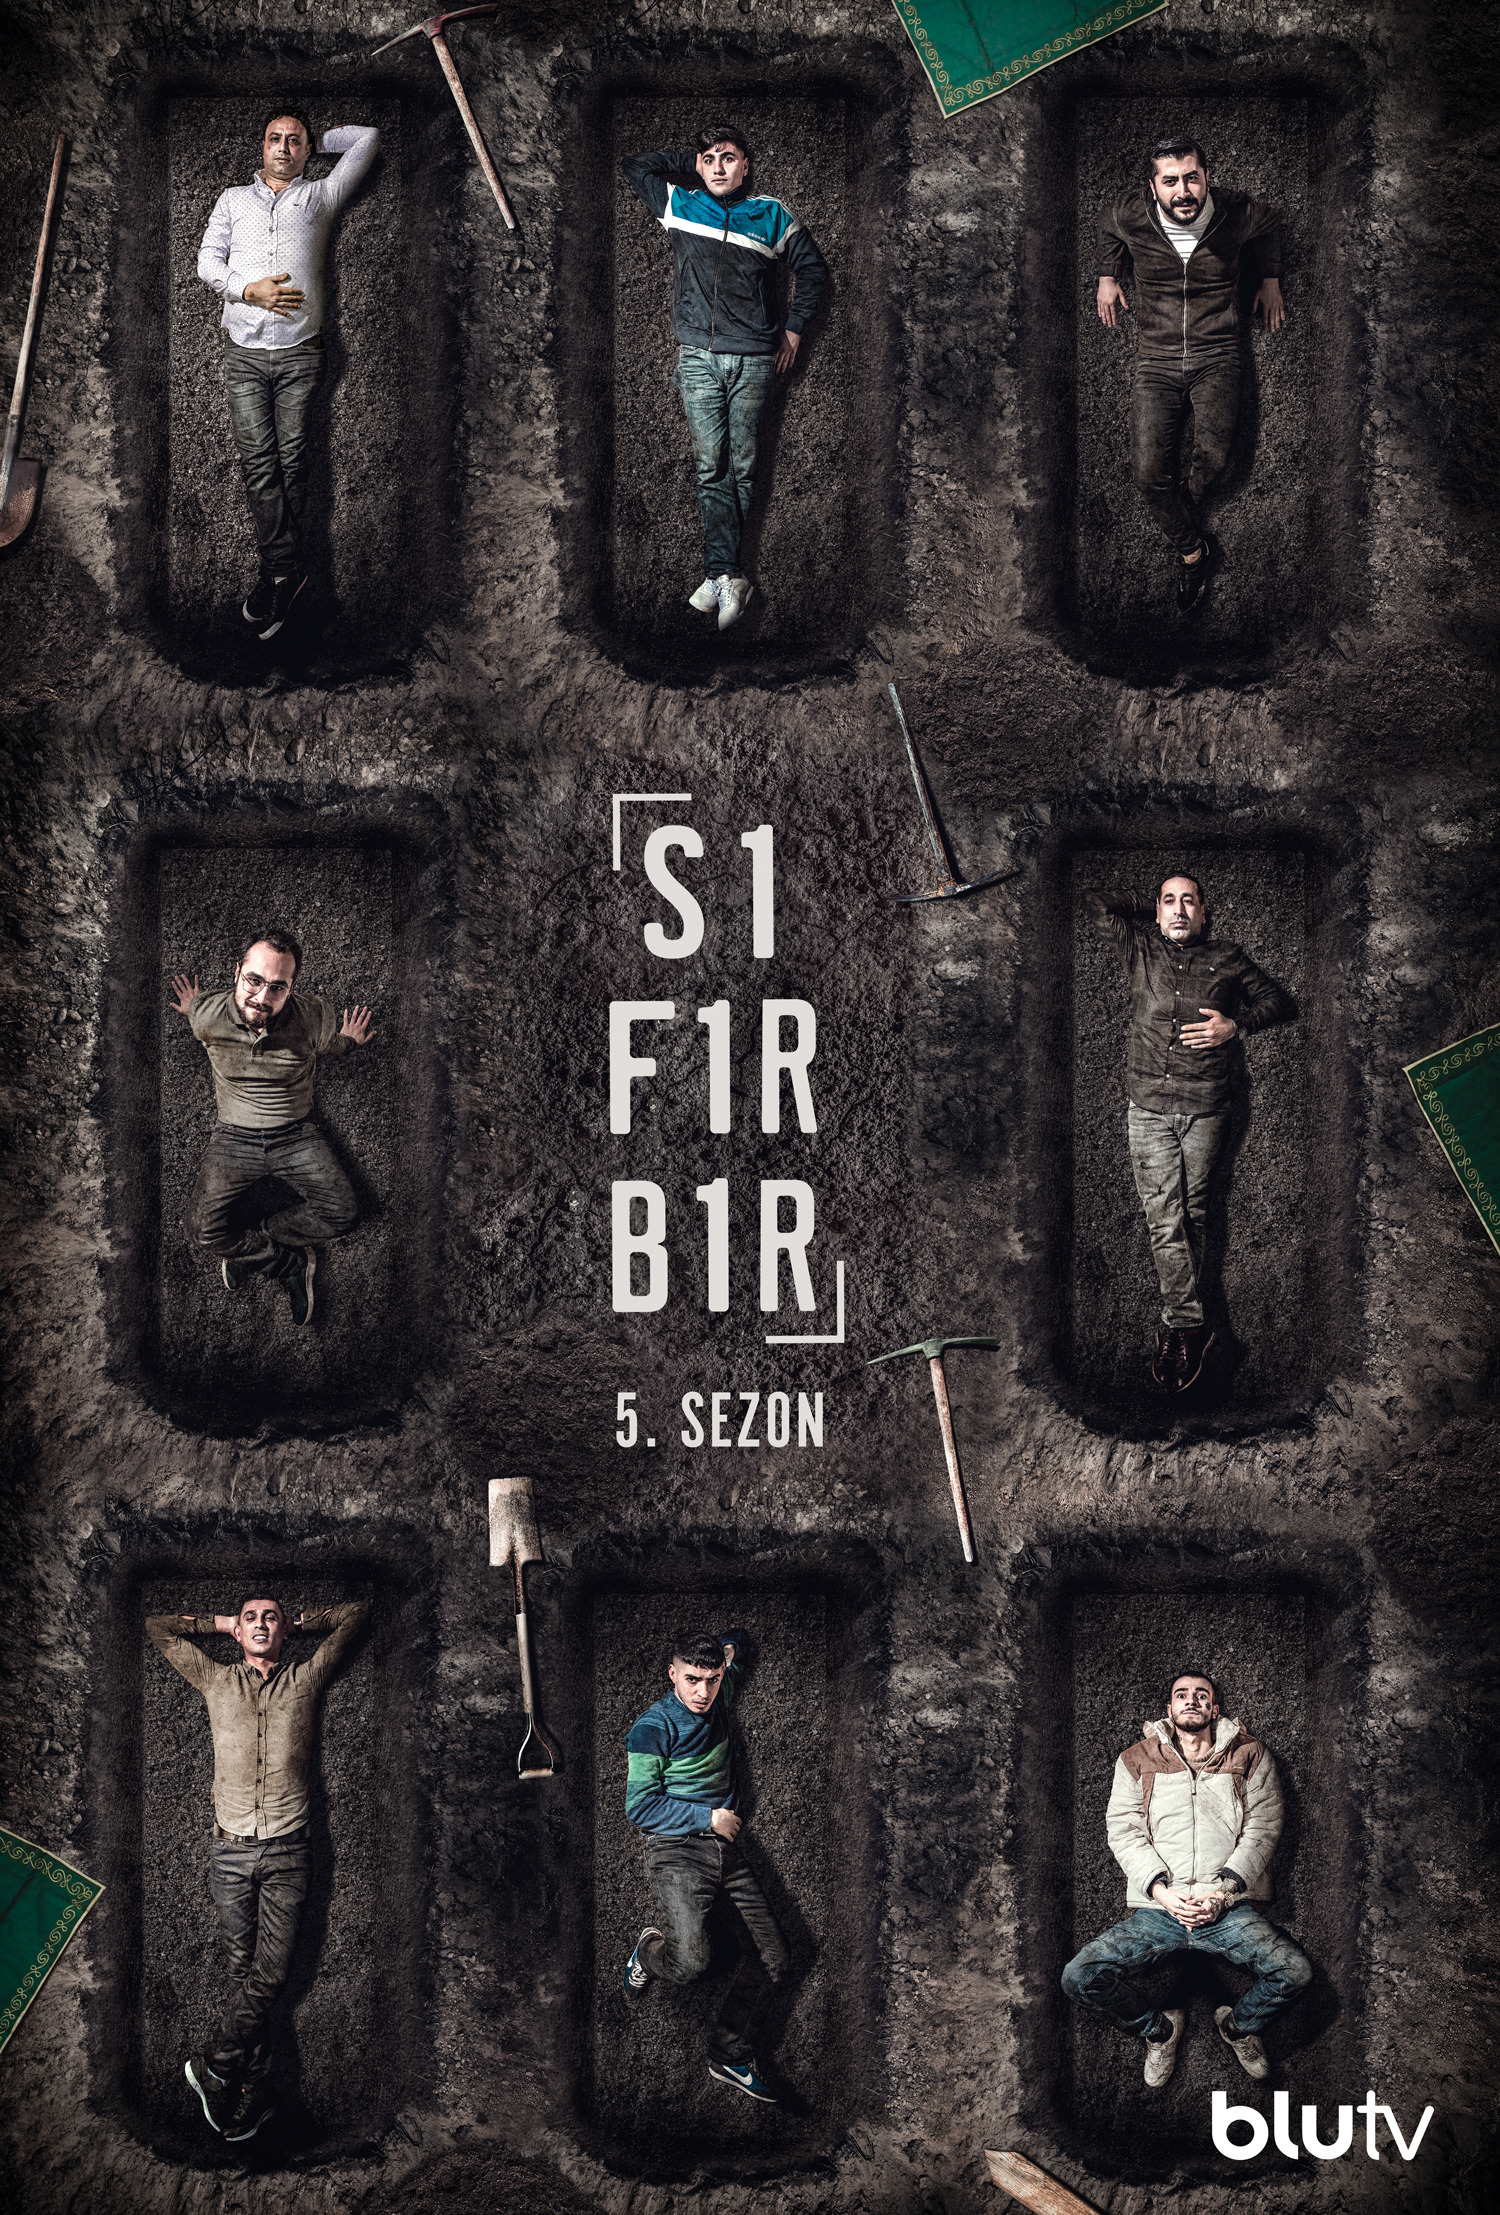 Mega Sized TV Poster Image for Sifir Bir (#20 of 23)